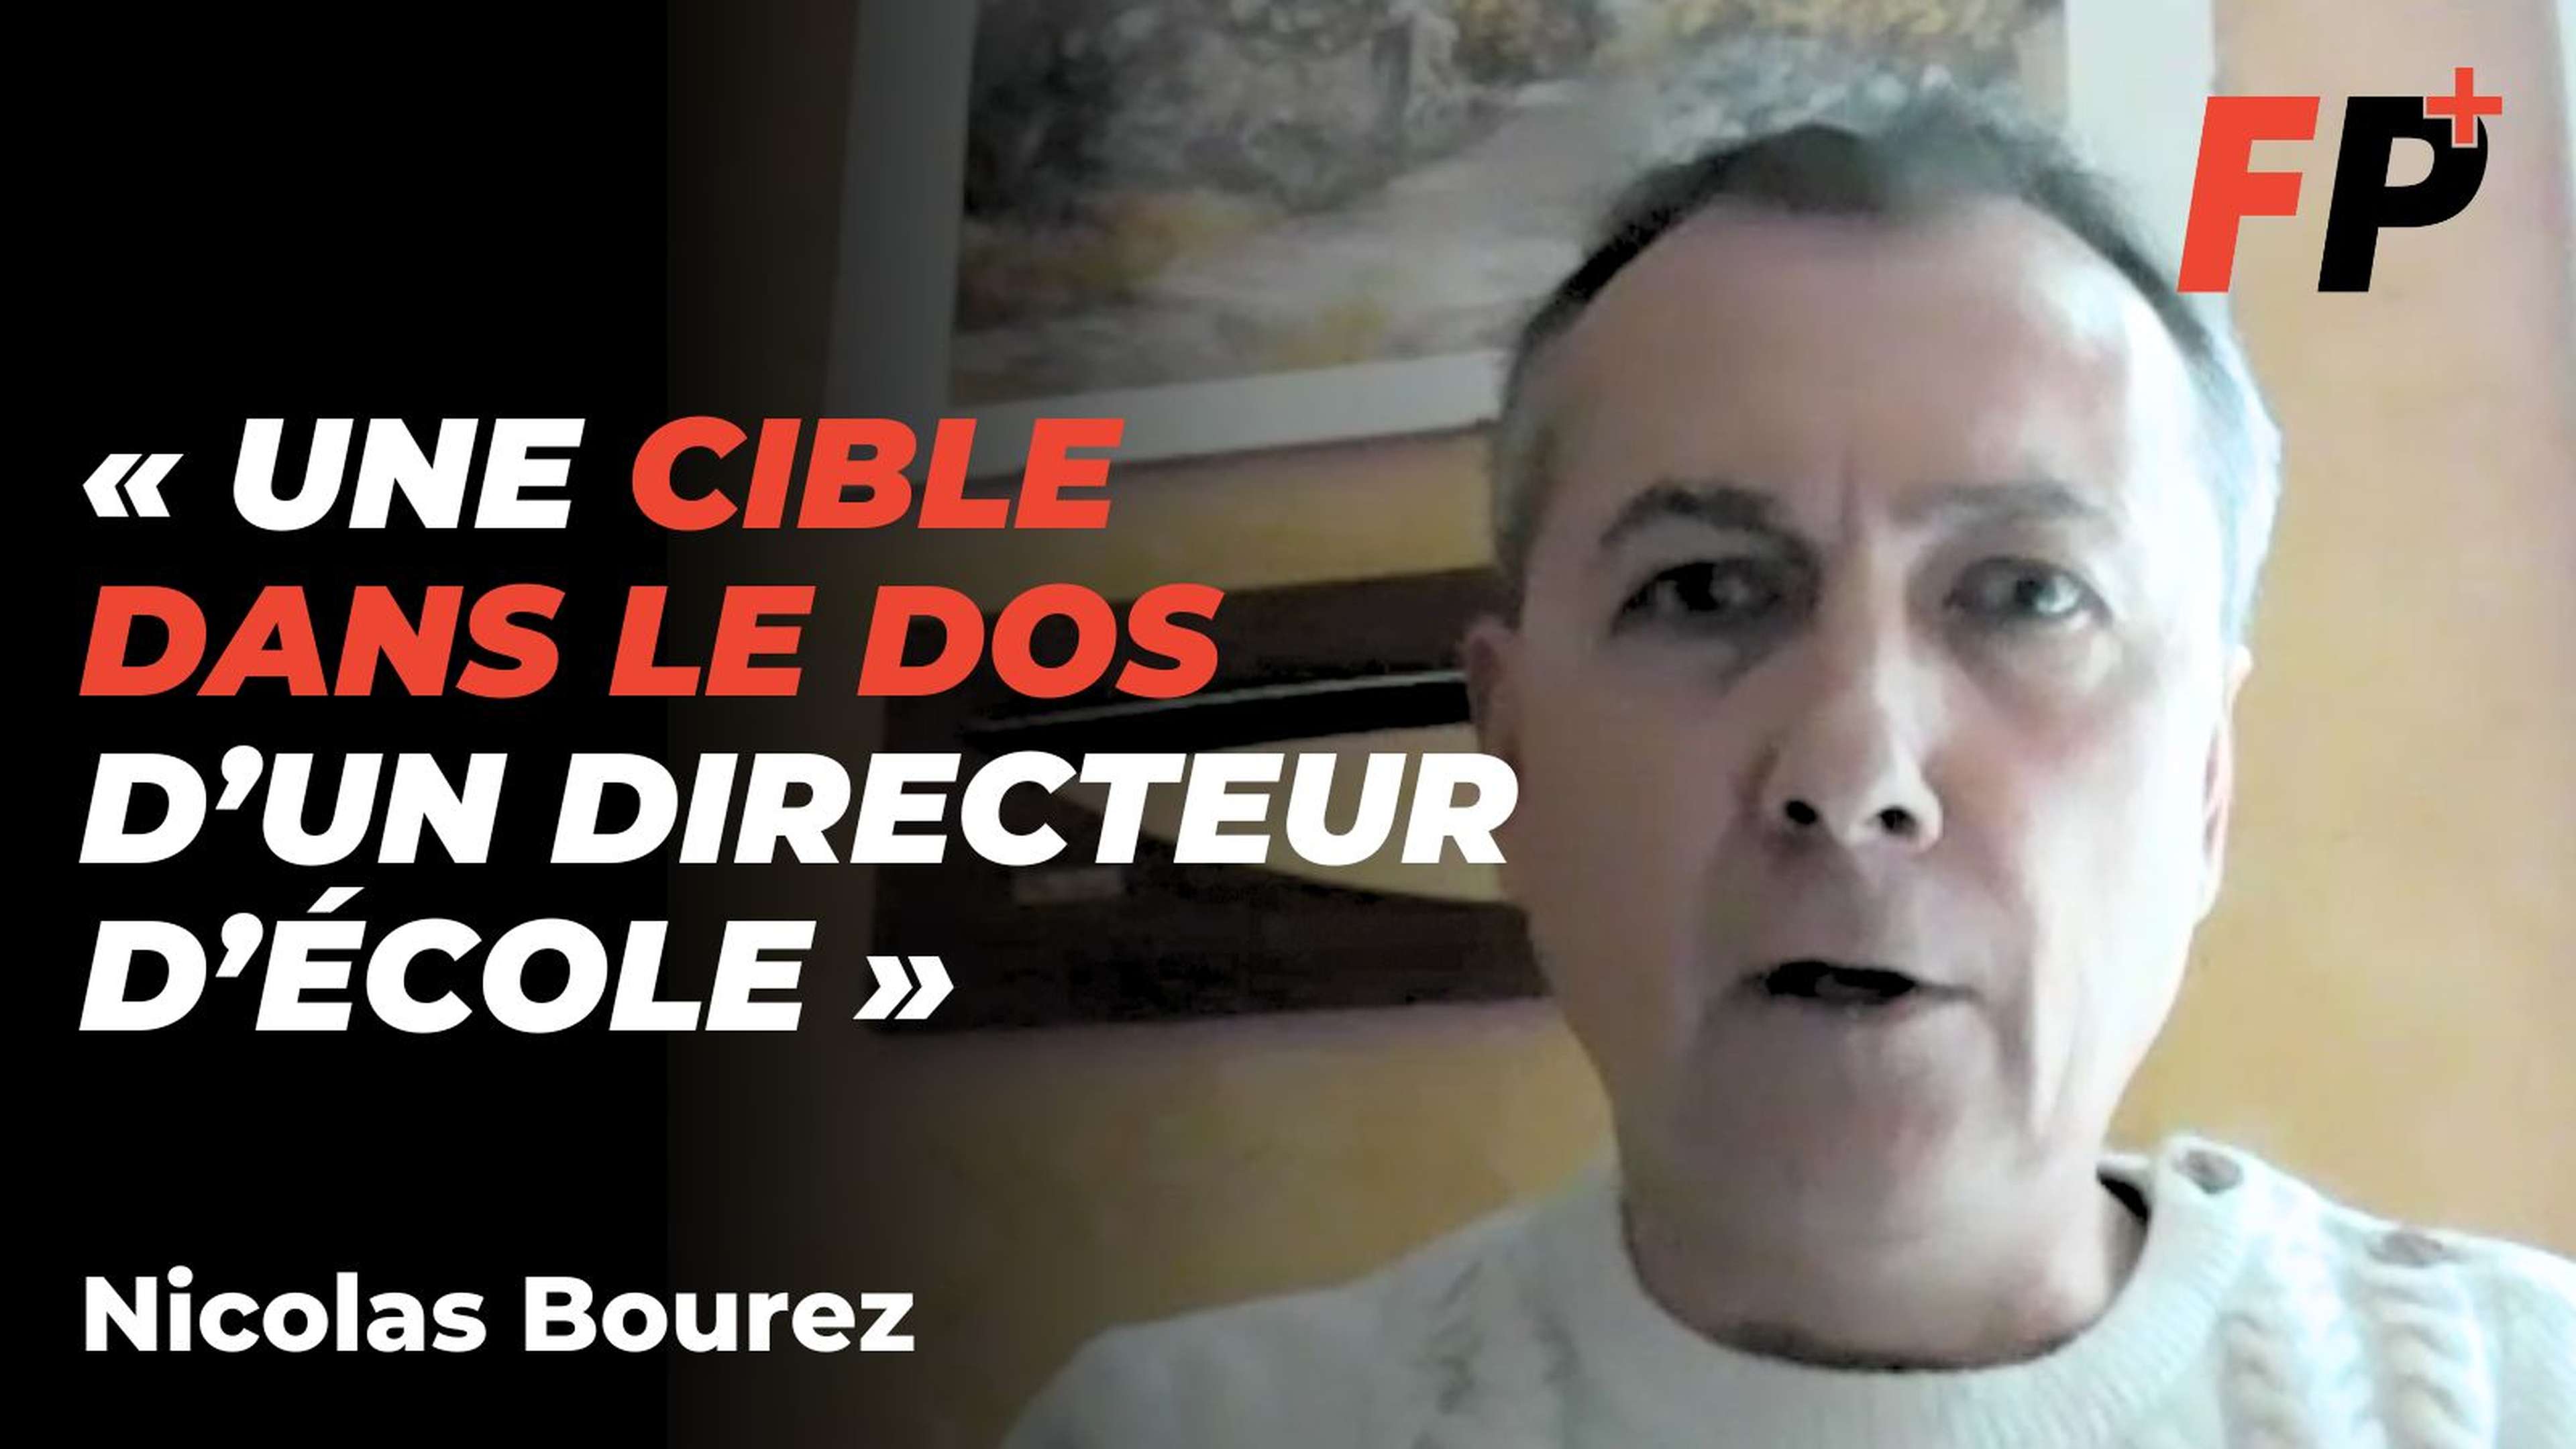 Nicolas Bourez, directeur d'école menacé : « Je préfère des critiques que des condoléances »